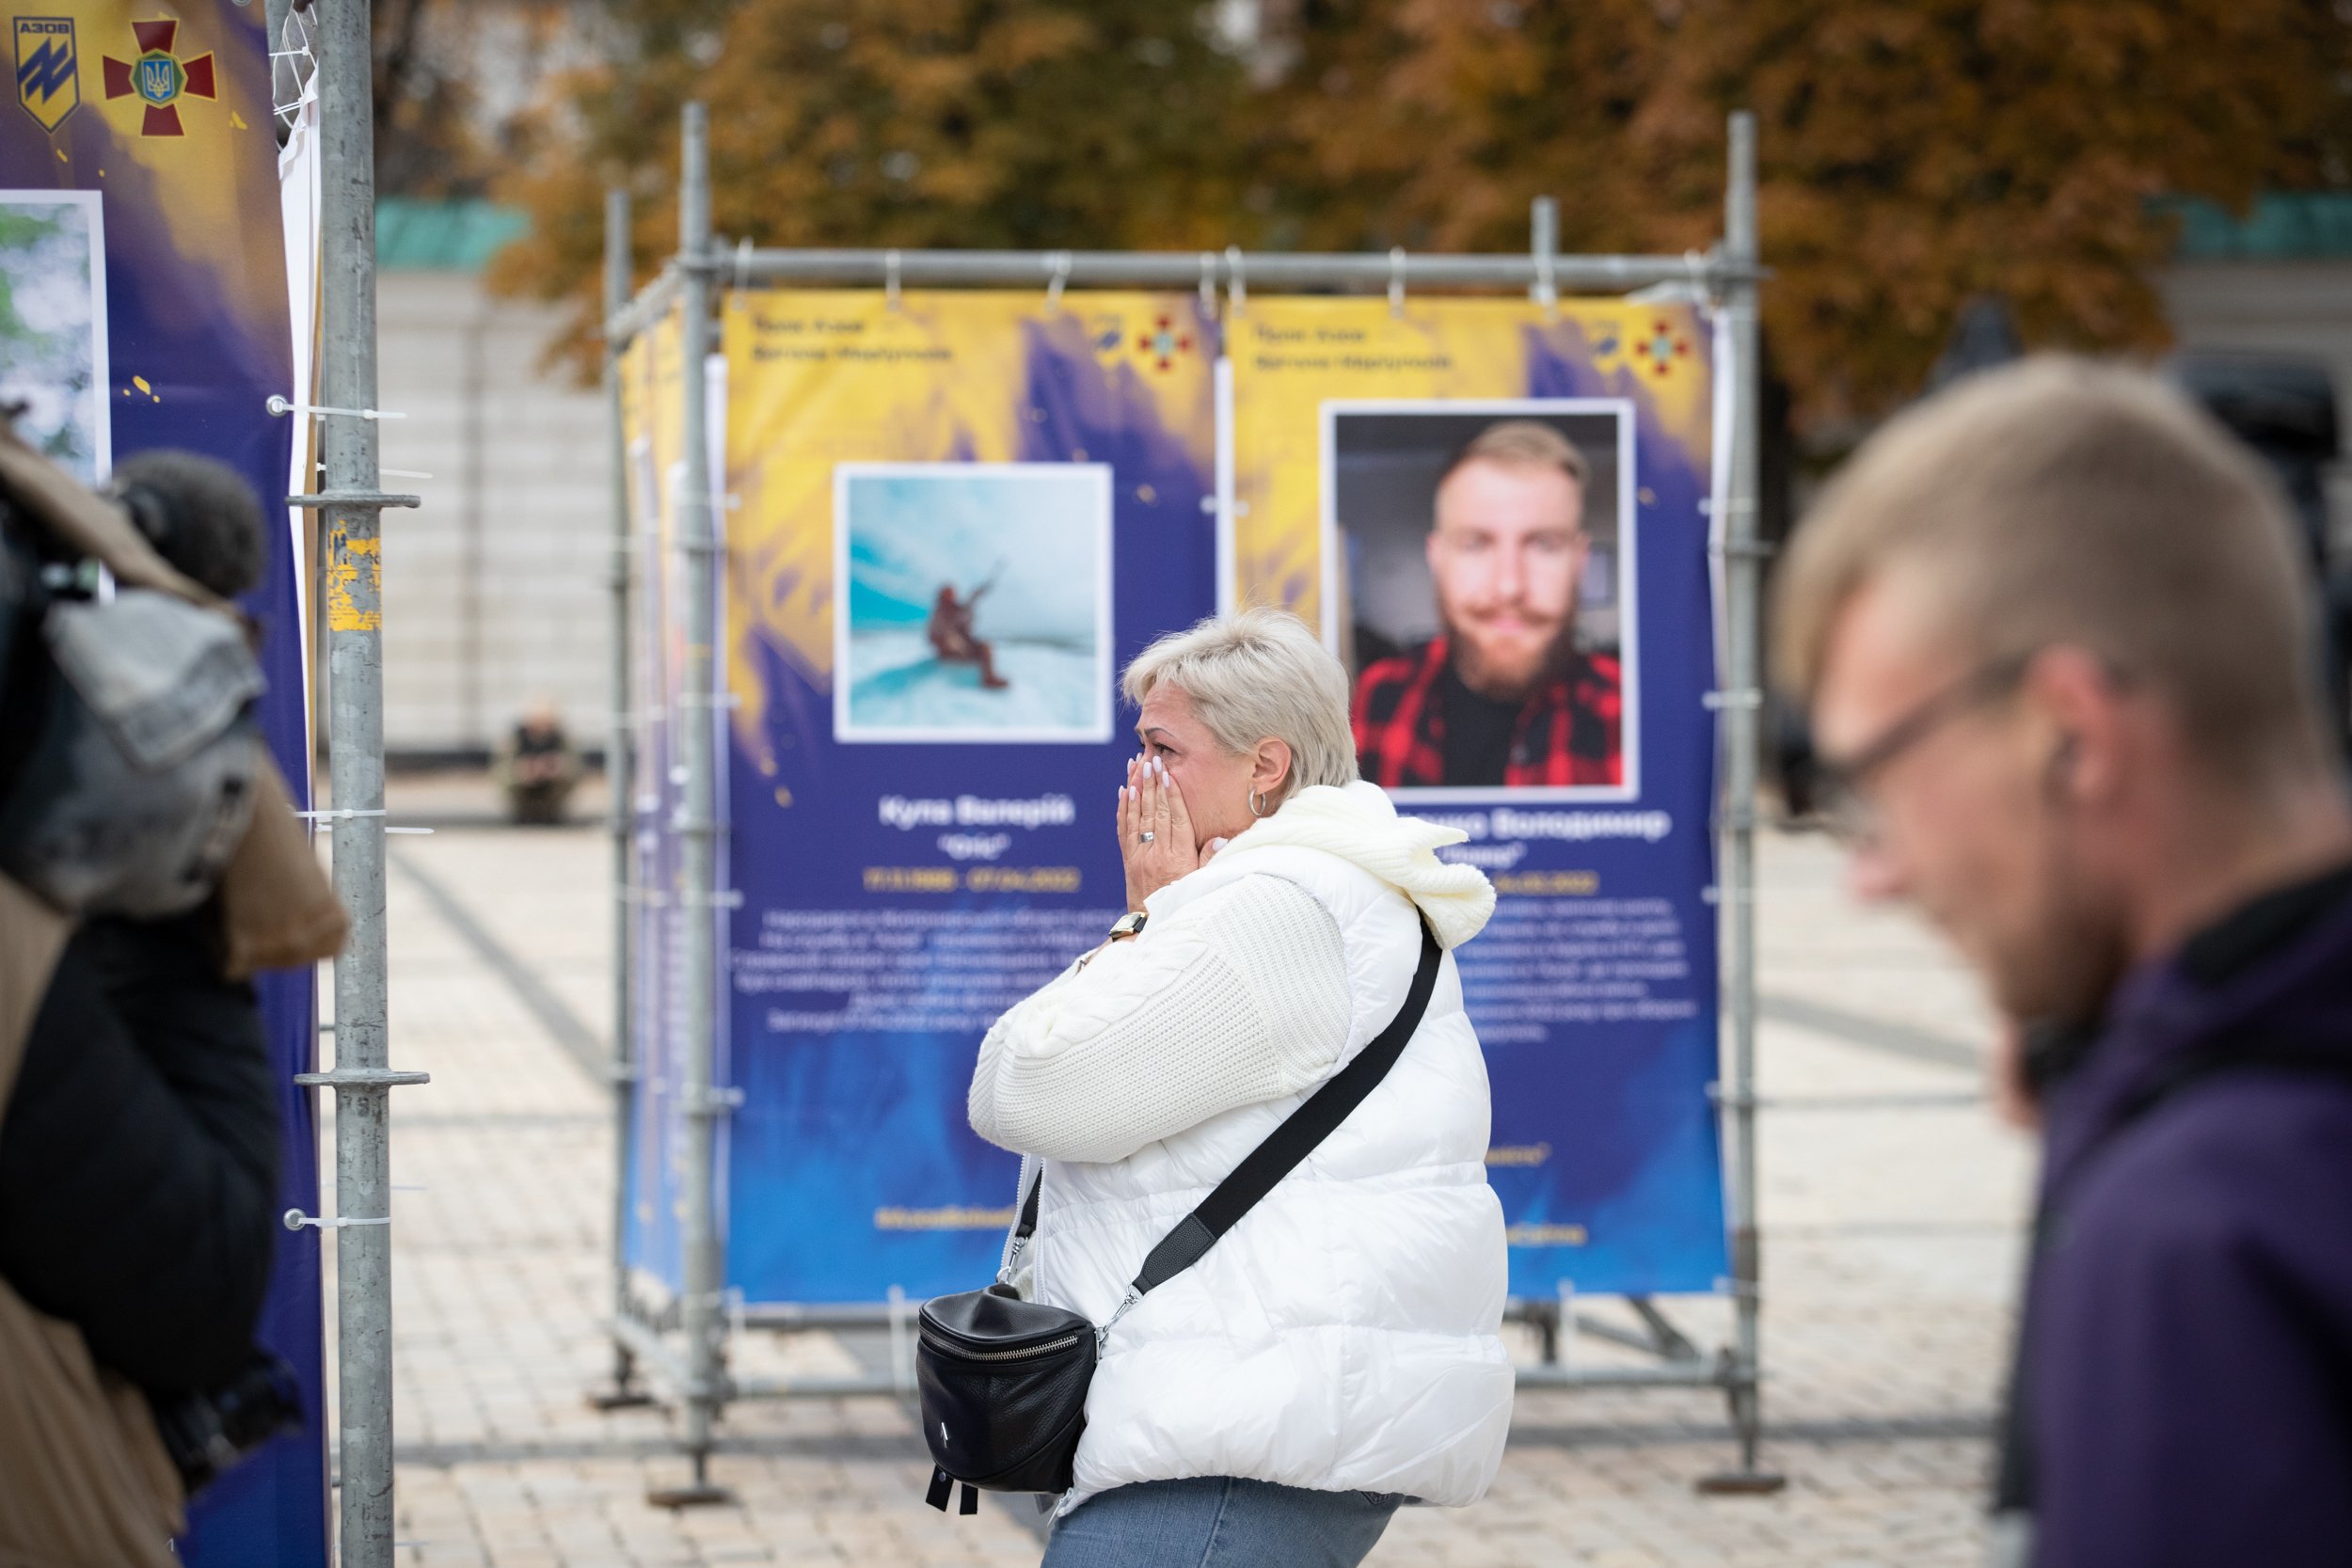 У Києві відкрили виставку "Полк Азов – янголи Маріуполя": фото